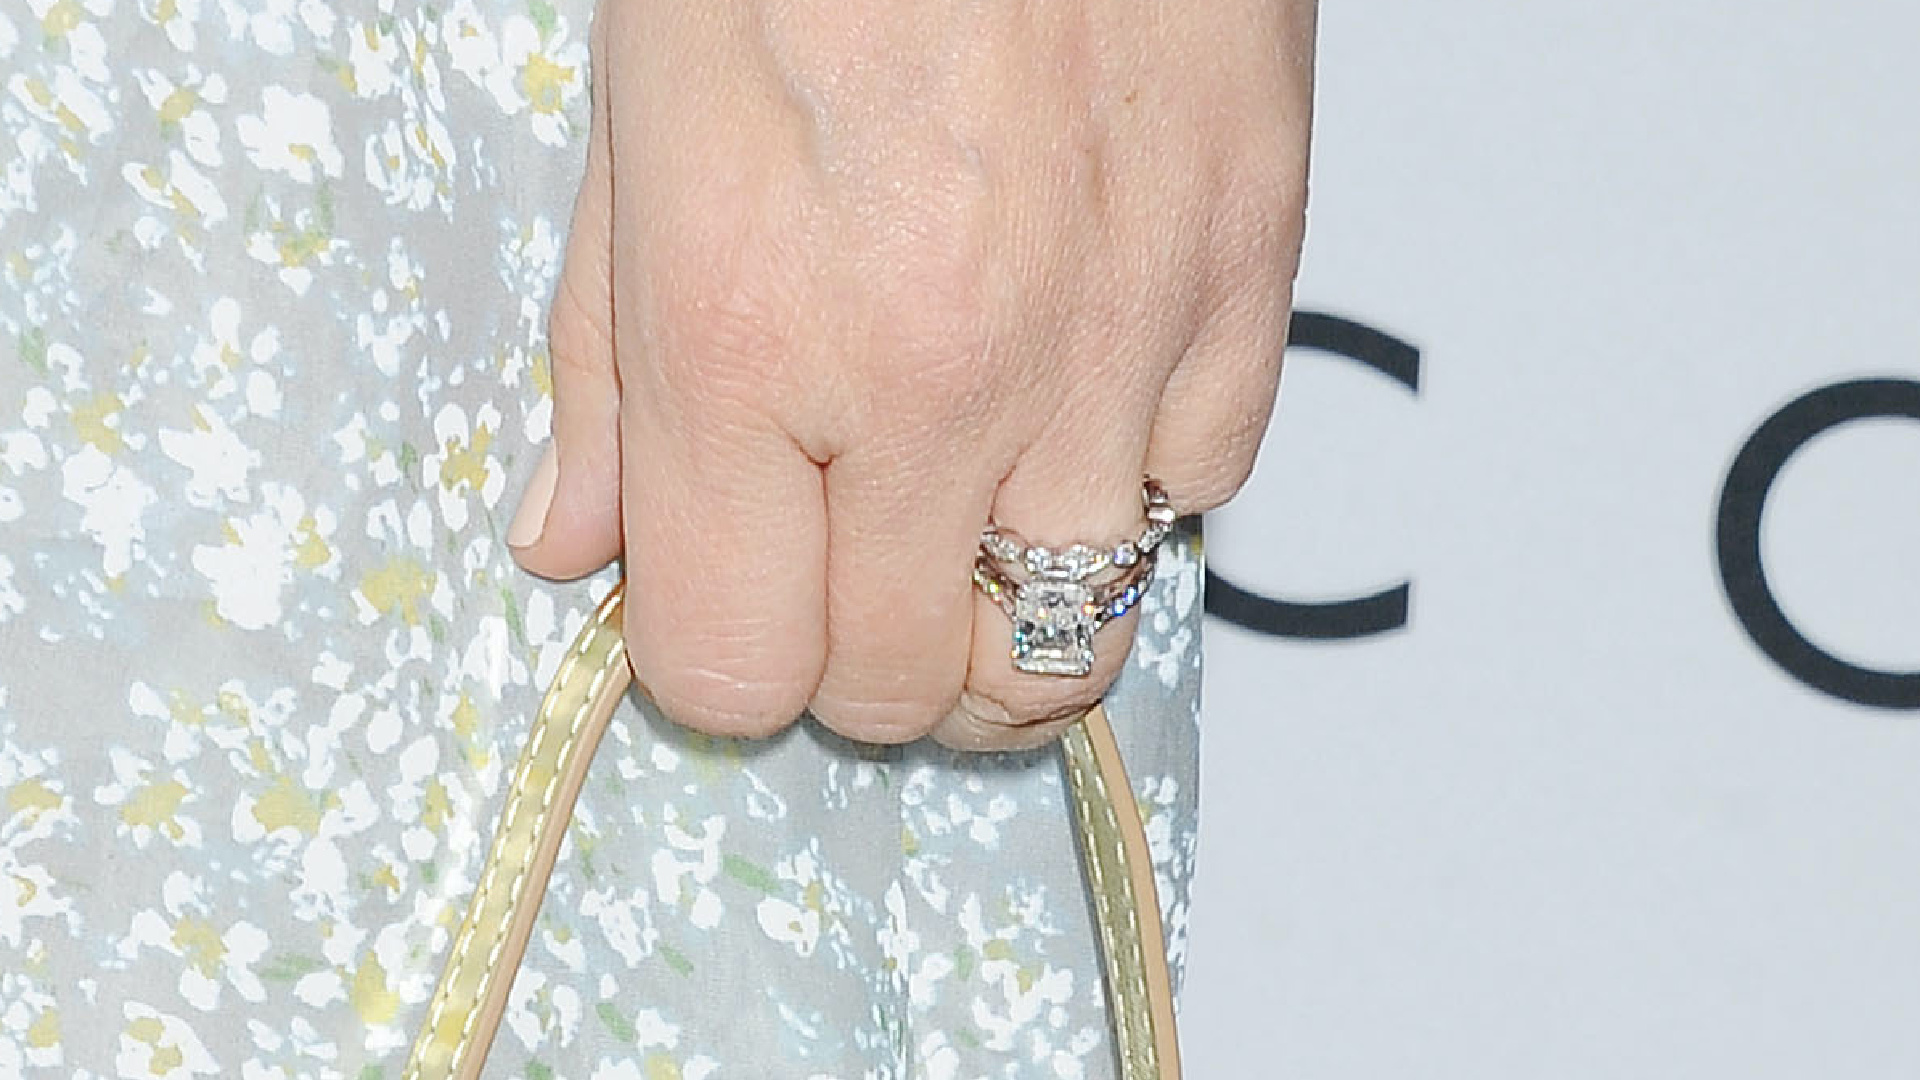 <p>El anillo de Drew Barrymore presenta un hermoso diamante de corte radiante que está ligeramente elevado por encima de la banda, con diamantes a su alrededor, lo que genera la cantidad justa de brillo. El anillo es completamente atemporal, por lo que se puede considerar que "siempre será clásico y contemporáneo a la vez".</p>